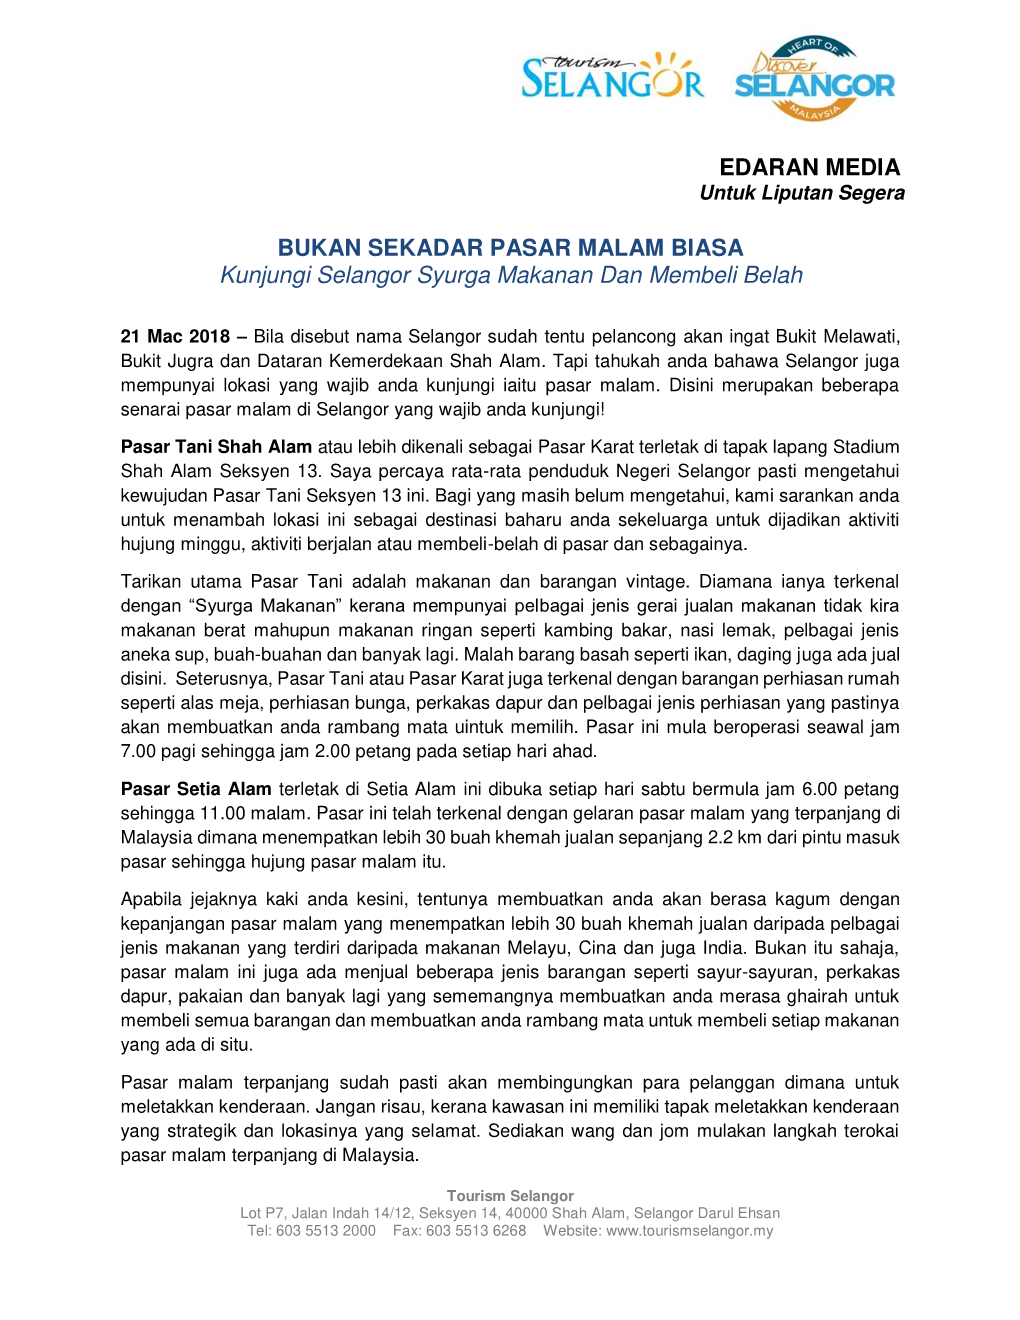 EDARAN MEDIA BUKAN SEKADAR PASAR MALAM BIASA Kunjungi Selangor Syurga Makanan Dan Membeli Belah